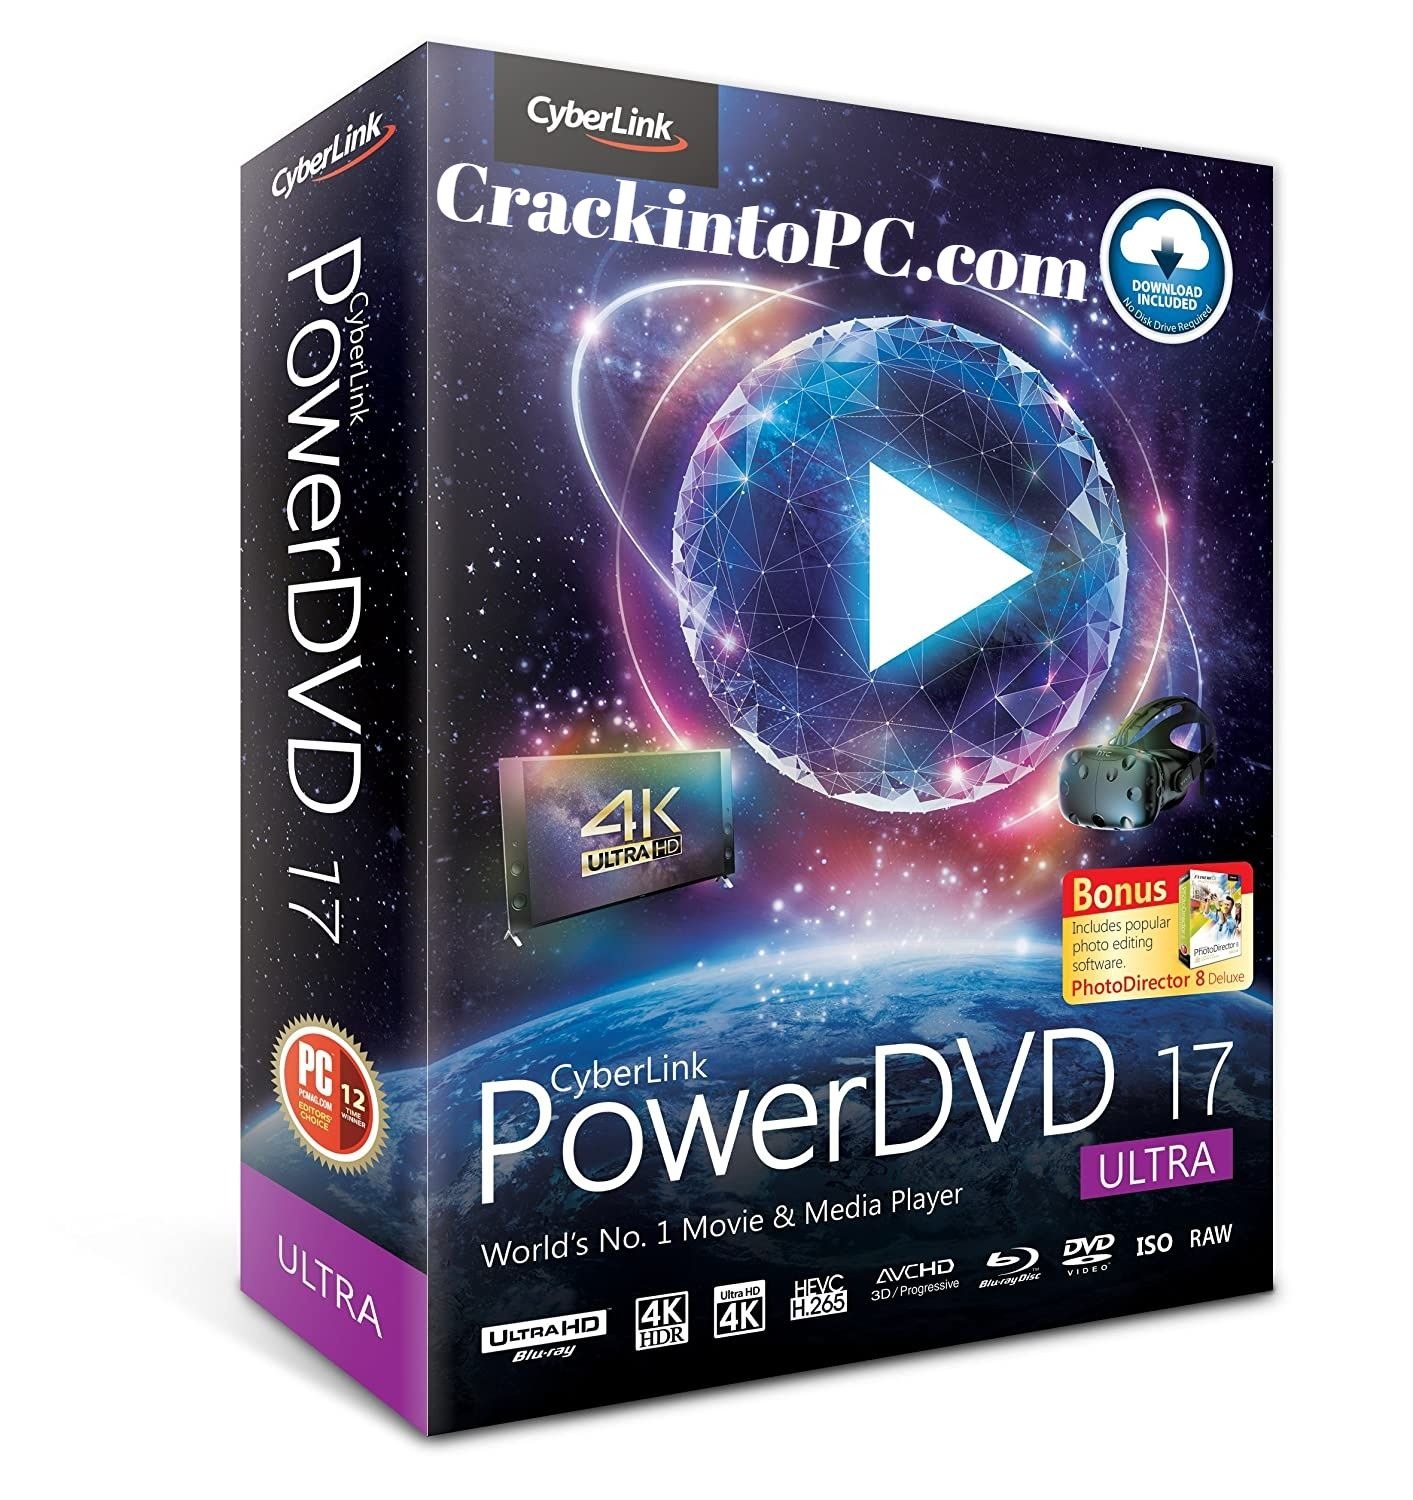 cyberlink power dvd 2020